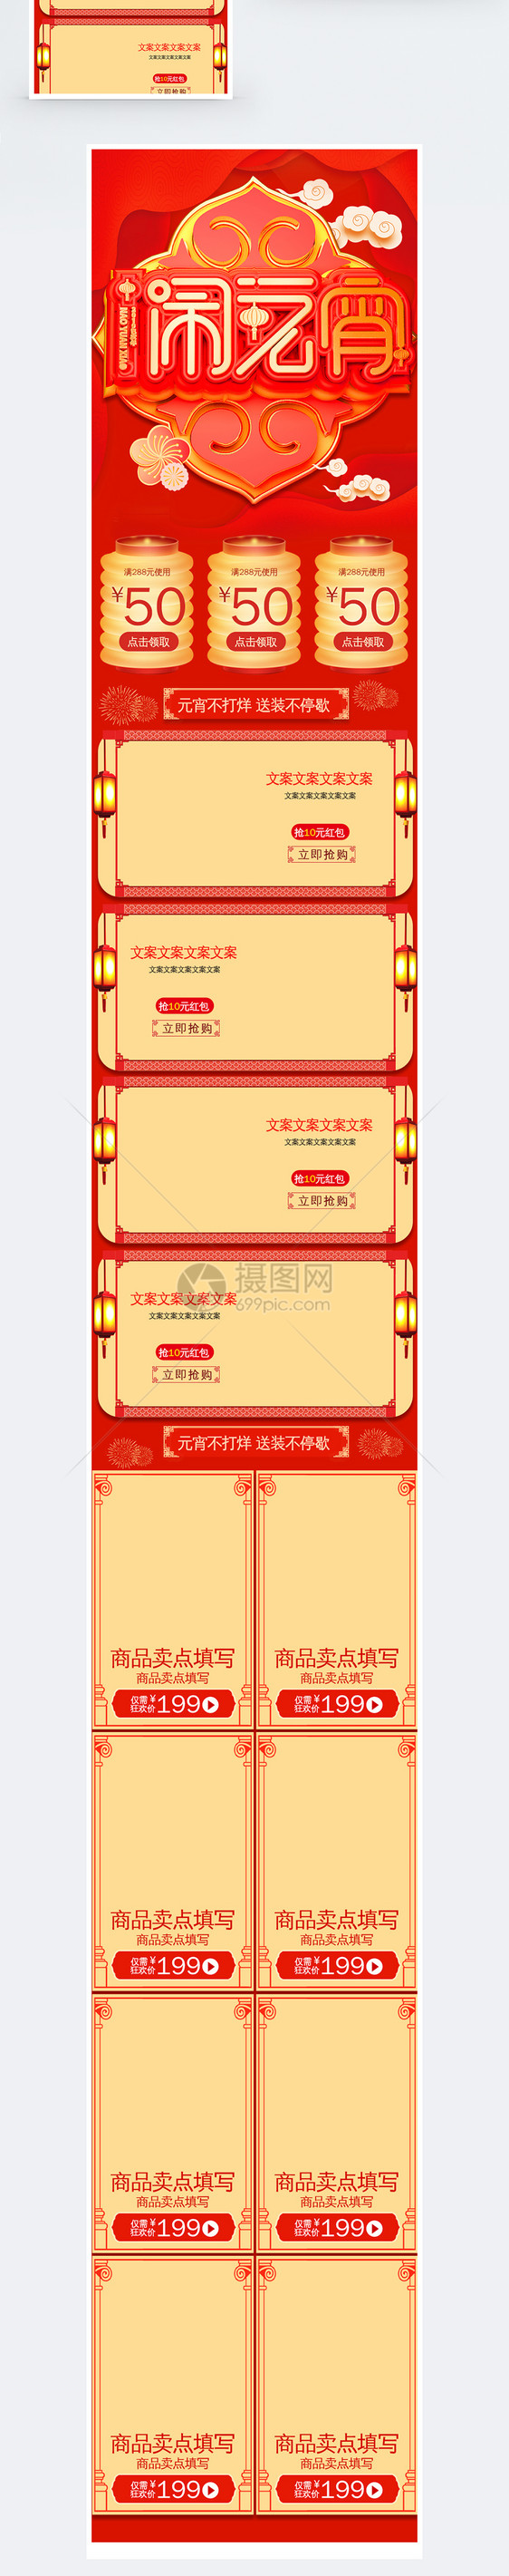 2019年度盛典淘宝天猫促销手机端首页图片